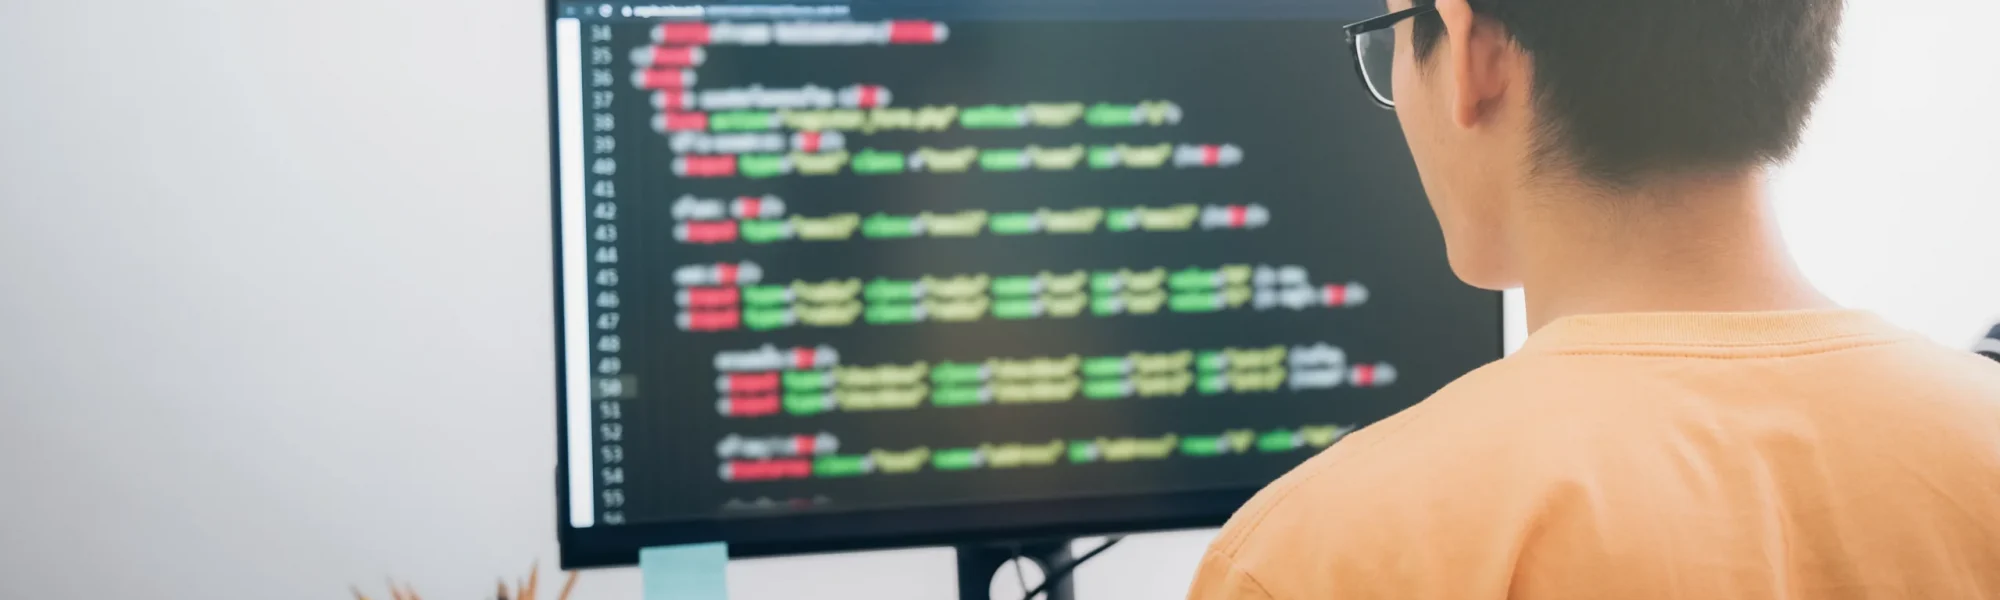 Homem trabalhando no computador em um projeto Node.js, desenvolvendo código e solucionando problemas de programação.